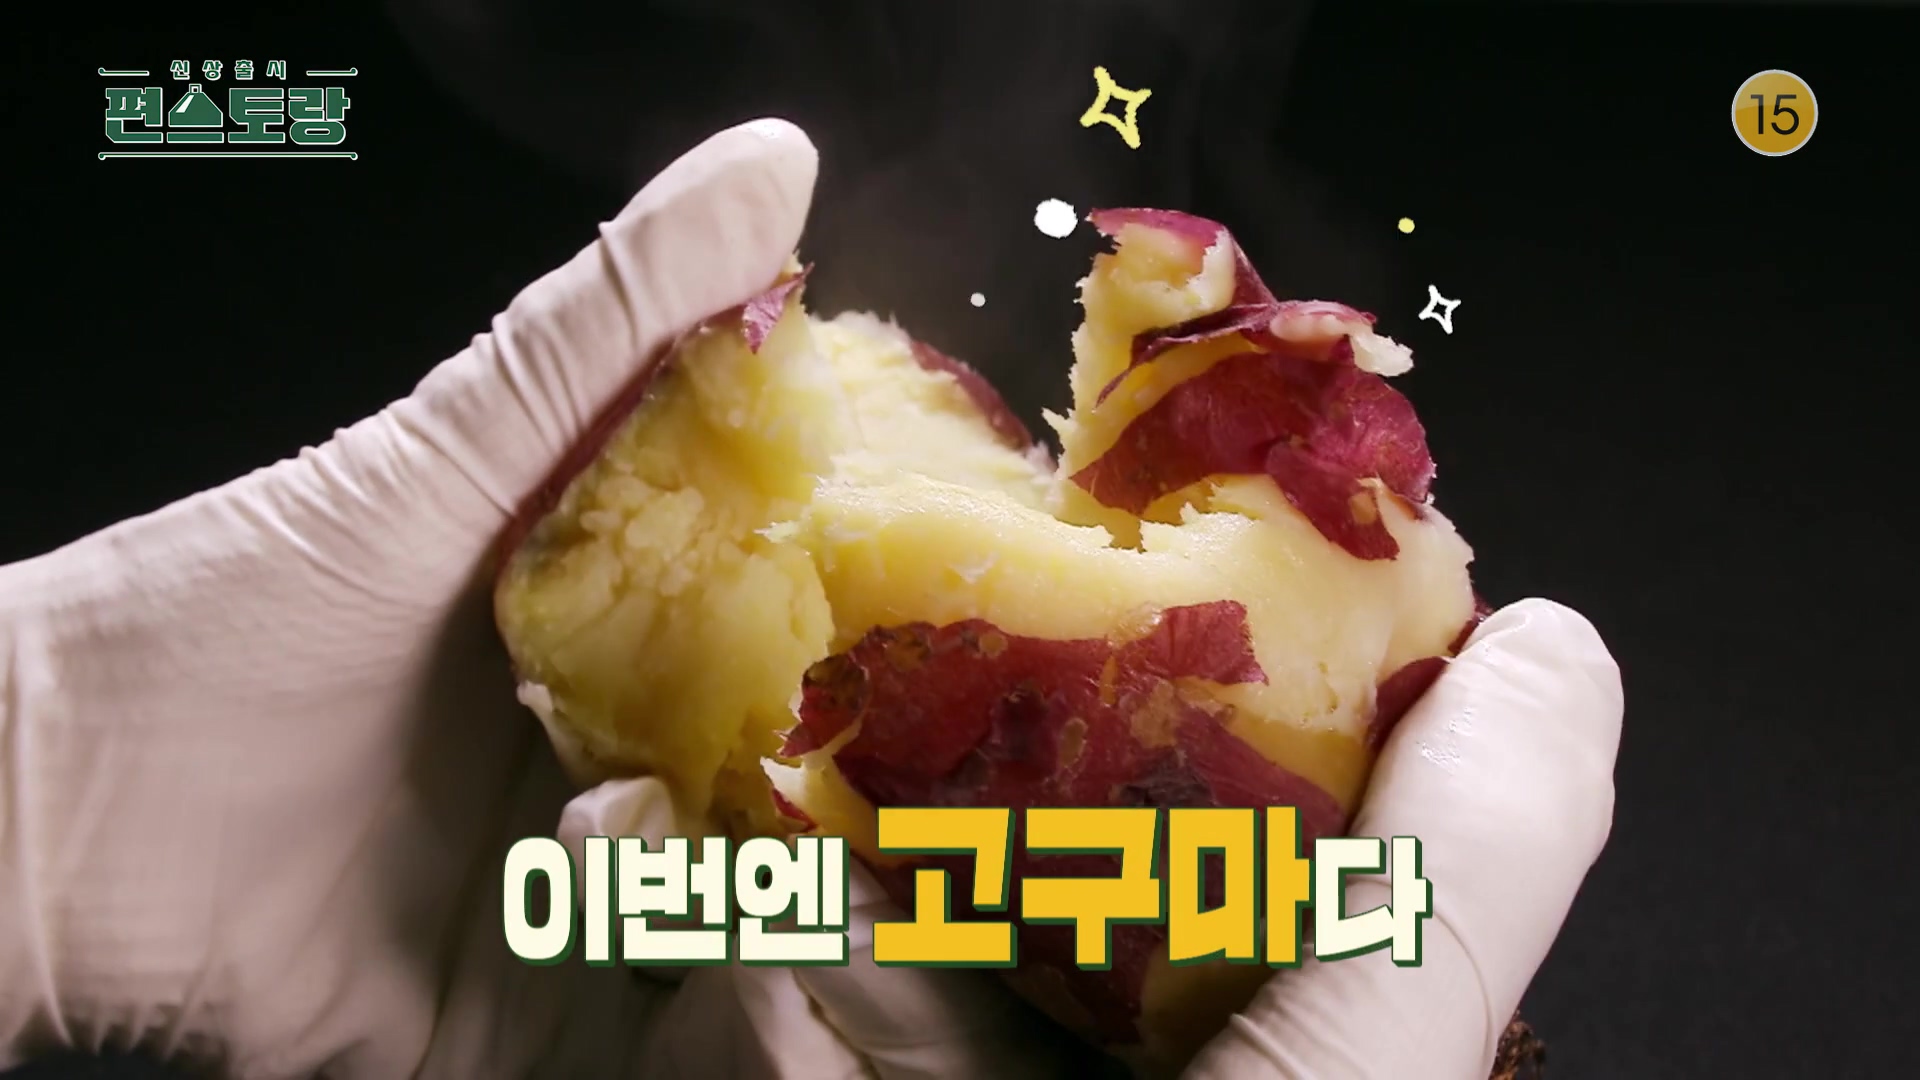 KBS 편스토랑 삼형제 아빠 카피정 정상훈 5분 완성 고구마잼 레시피 만드는 방법 소개